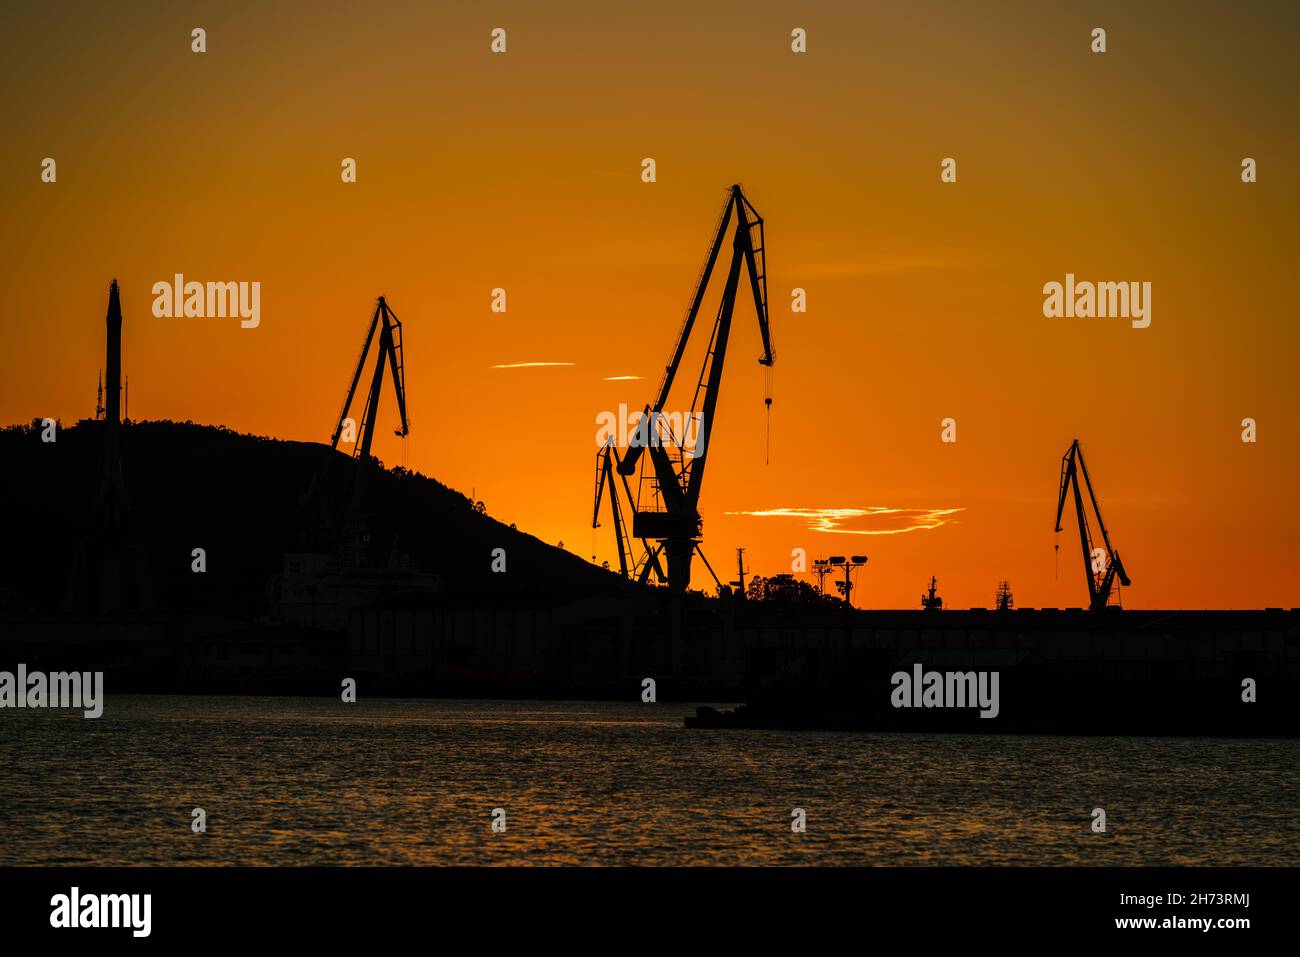 Grues de chantier naval de port contre le ciel orange Banque D'Images